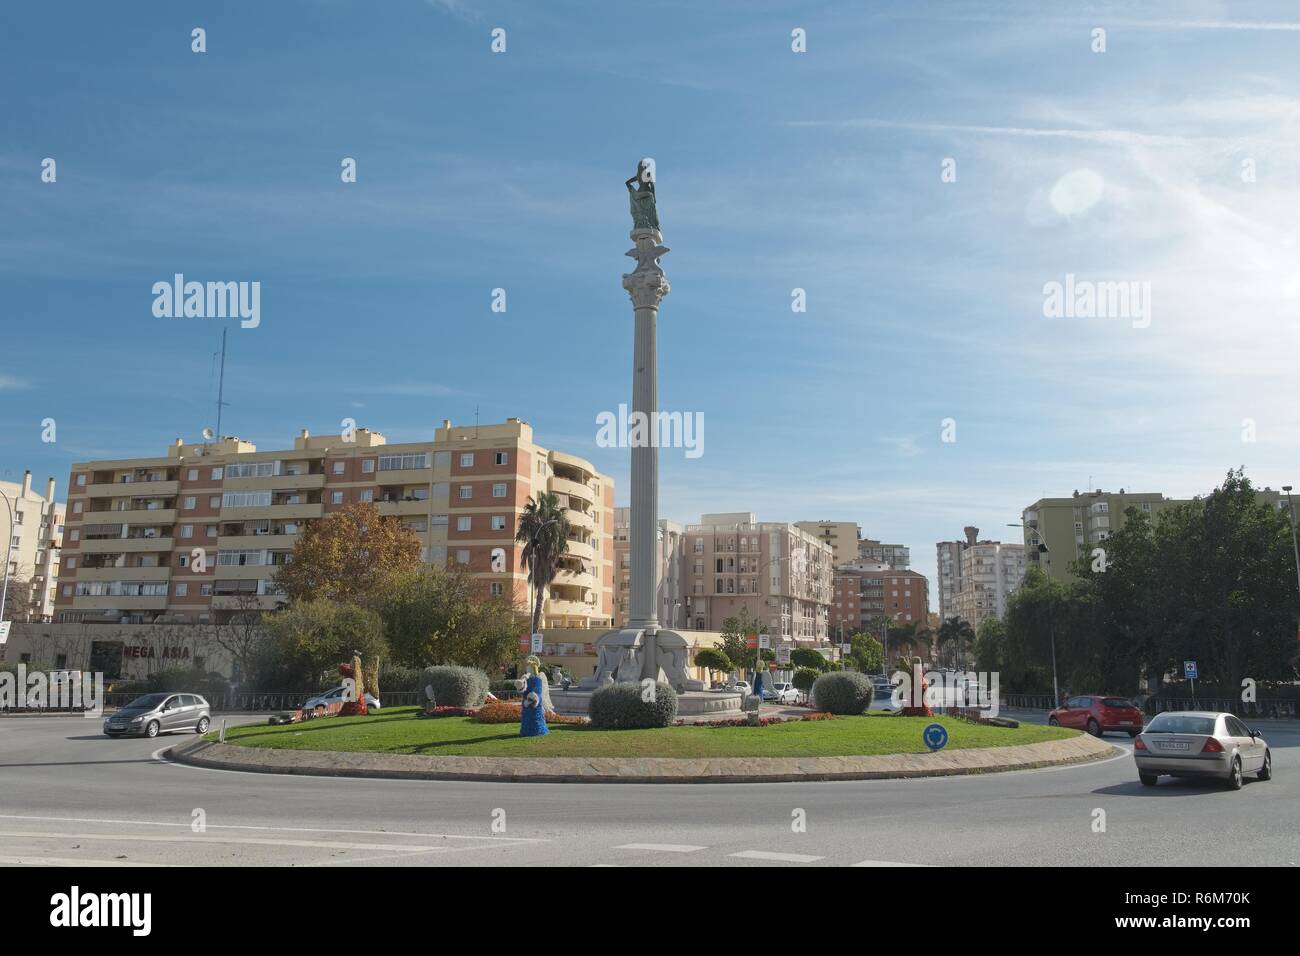 Monumento al Turista (Monument to the tourist). Torremolinos, Málaga, Spain. Stock Photo